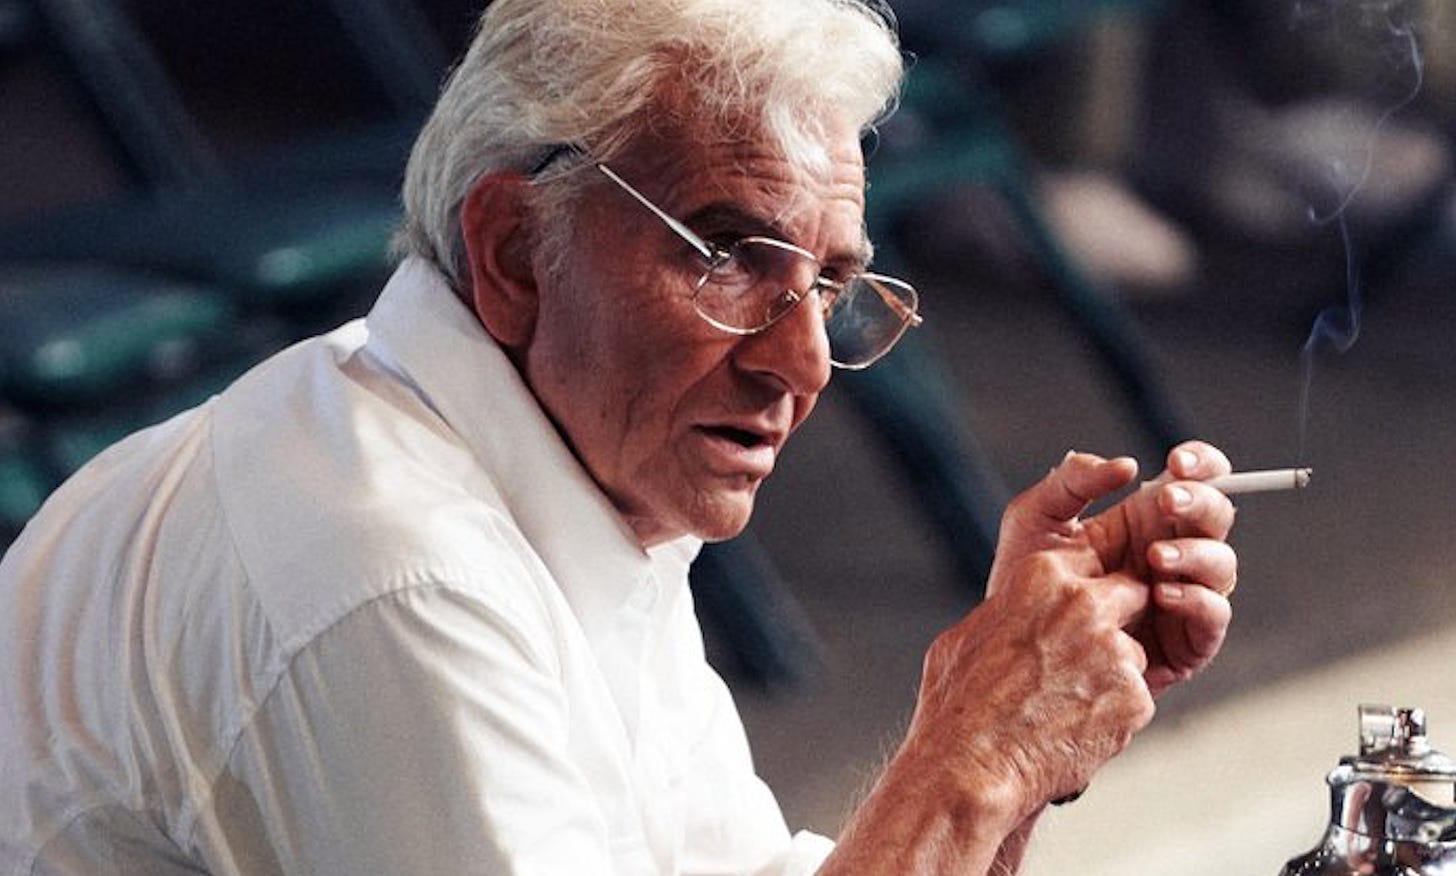 Maestro' First Look: Bradley Cooper Transforms Into Leonard Bernstein